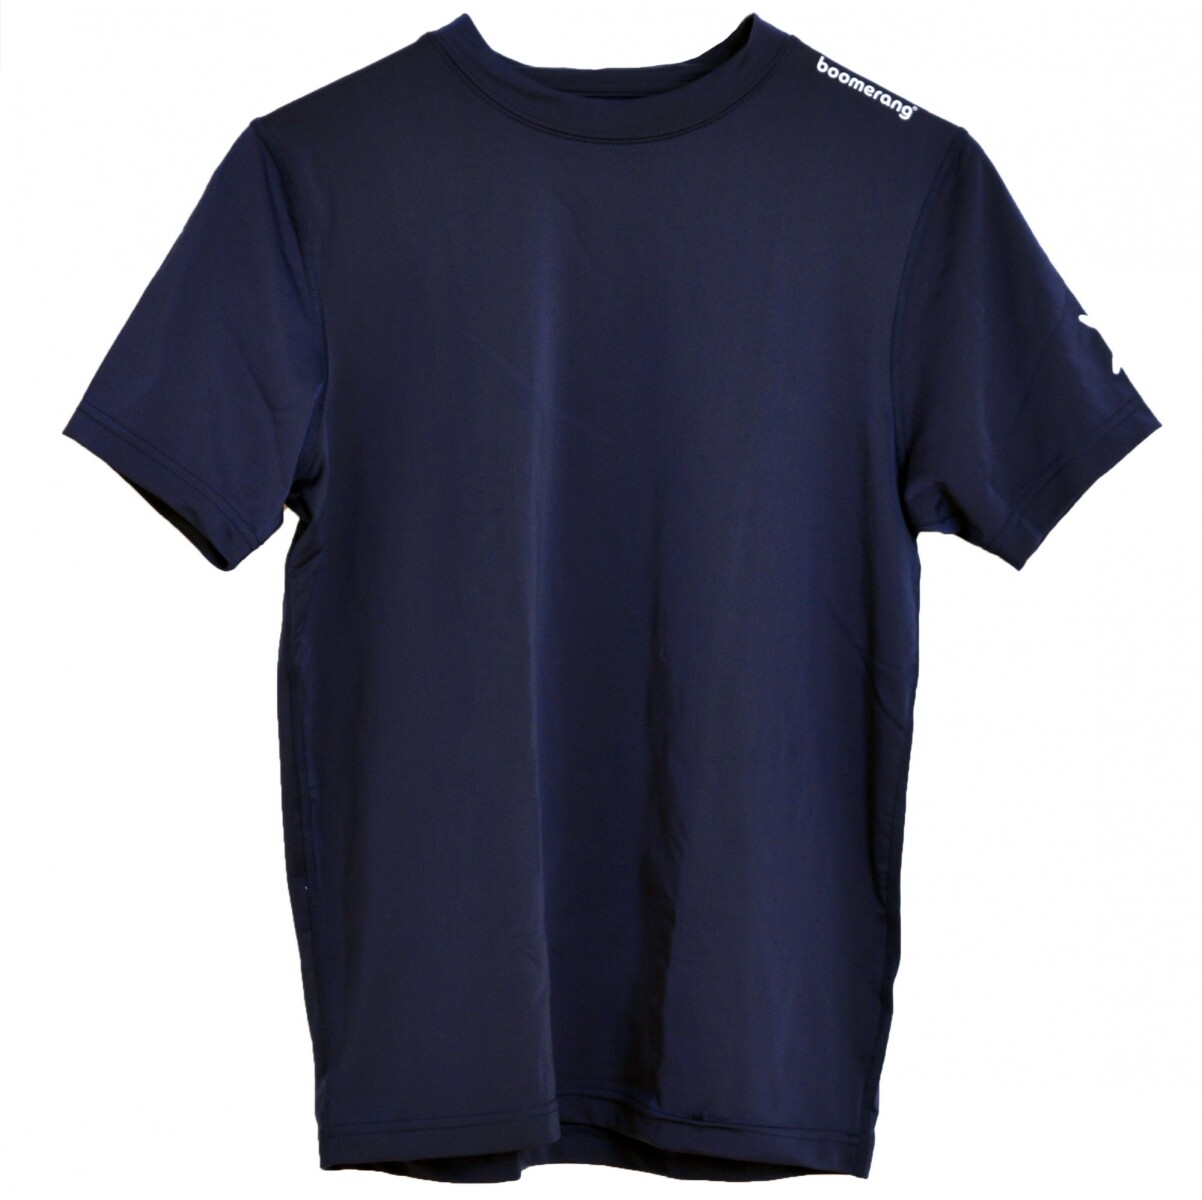 Tshirt Lycra M/C Adulto - Navy 